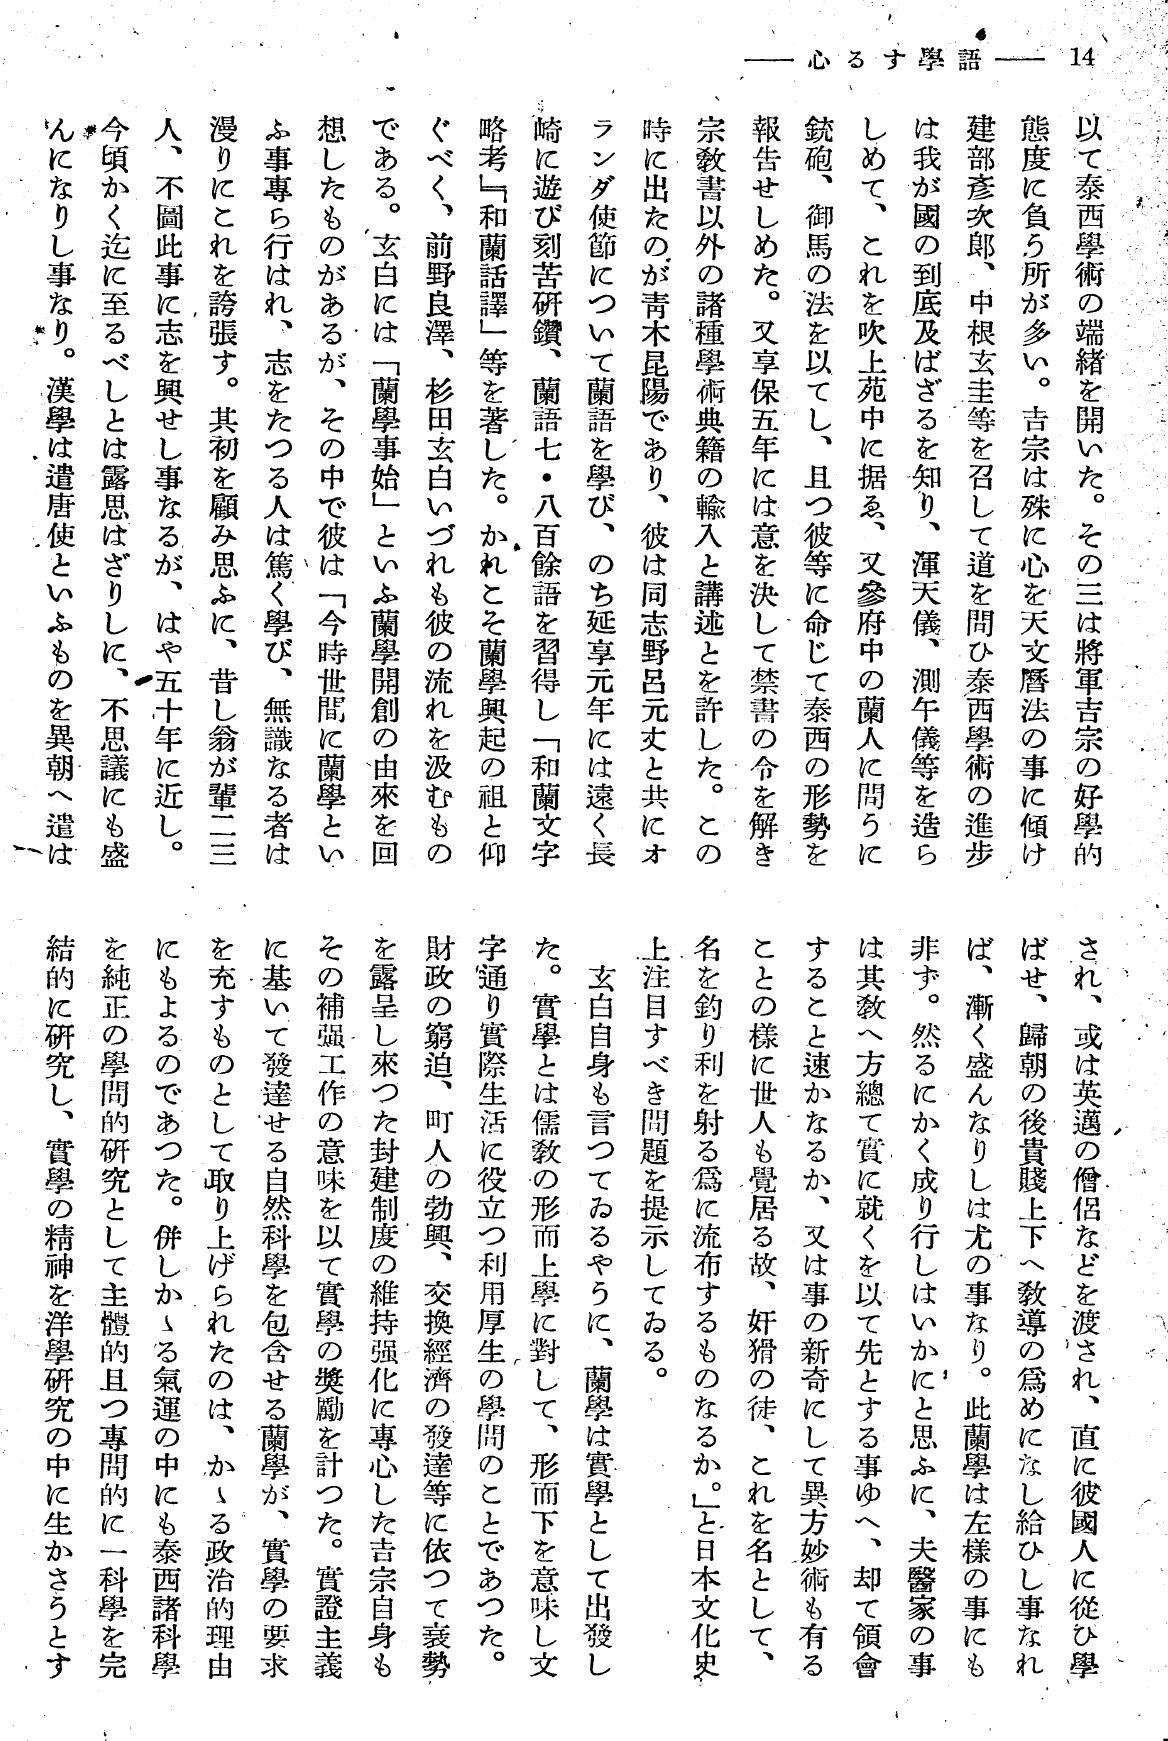 報國団雑誌 第19号 104 西尾孝 語学する心04.jpg